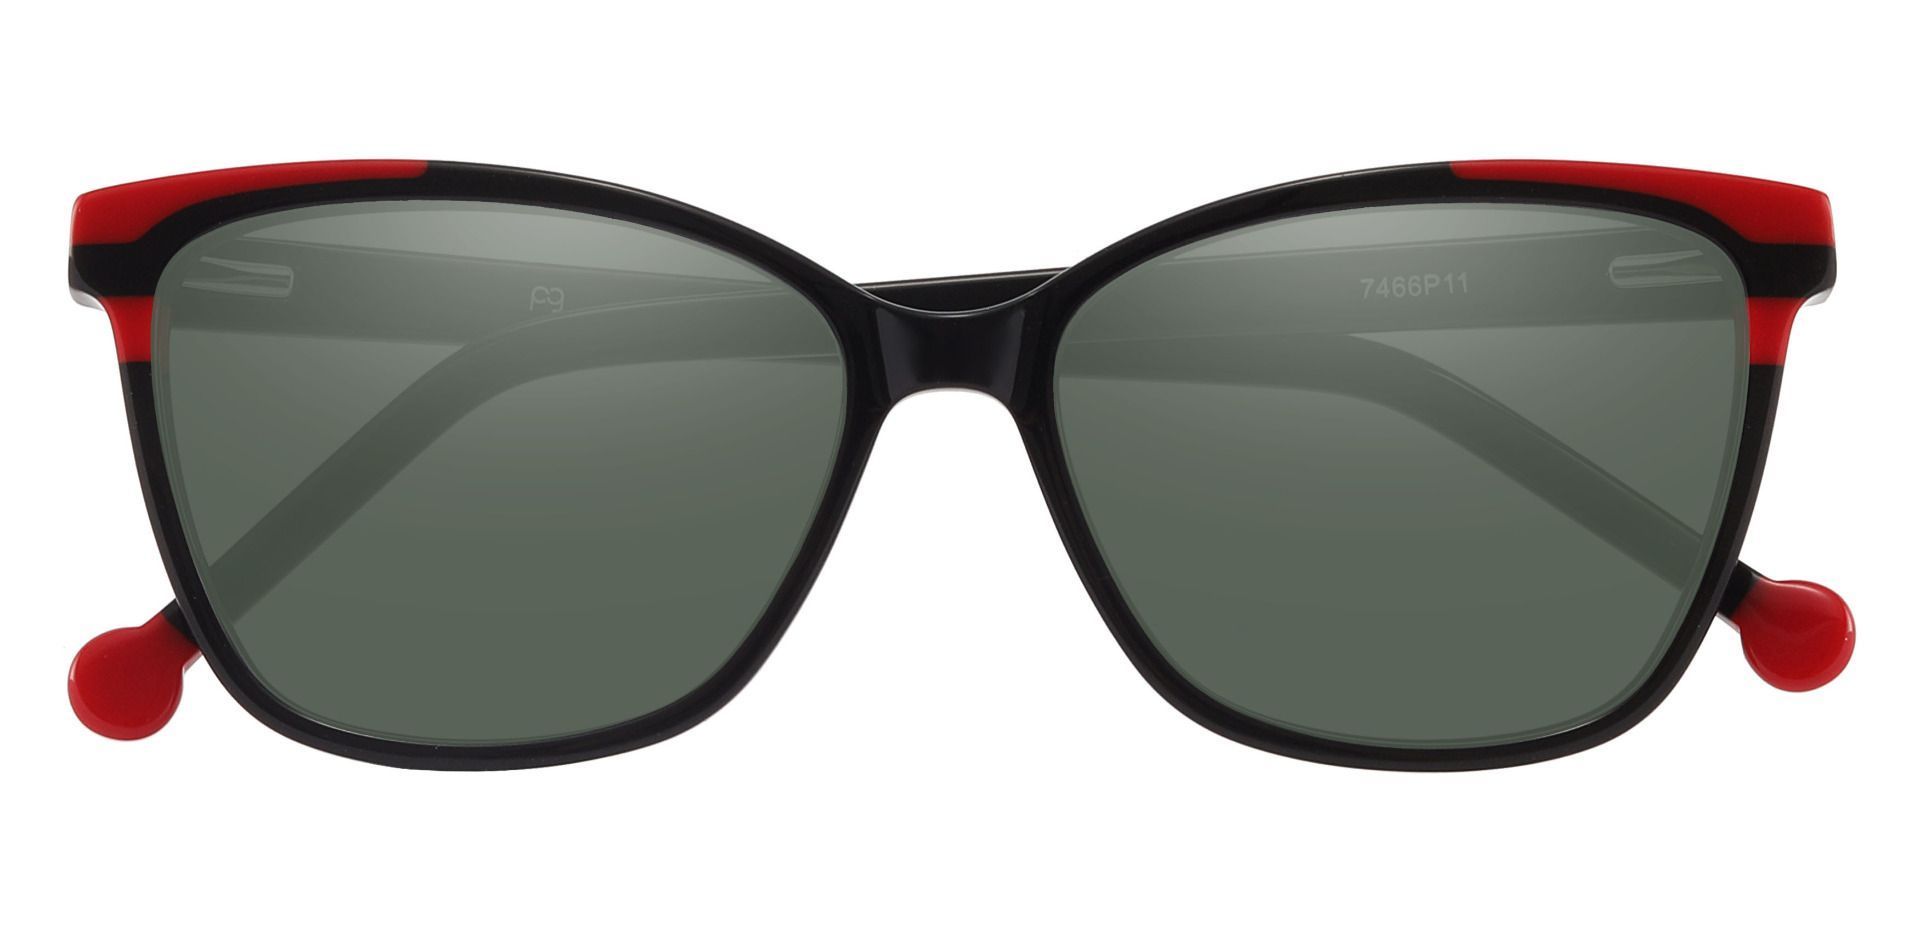 Shania Cat Eye Progressive Sunglasses - Black Frame With Green Lenses